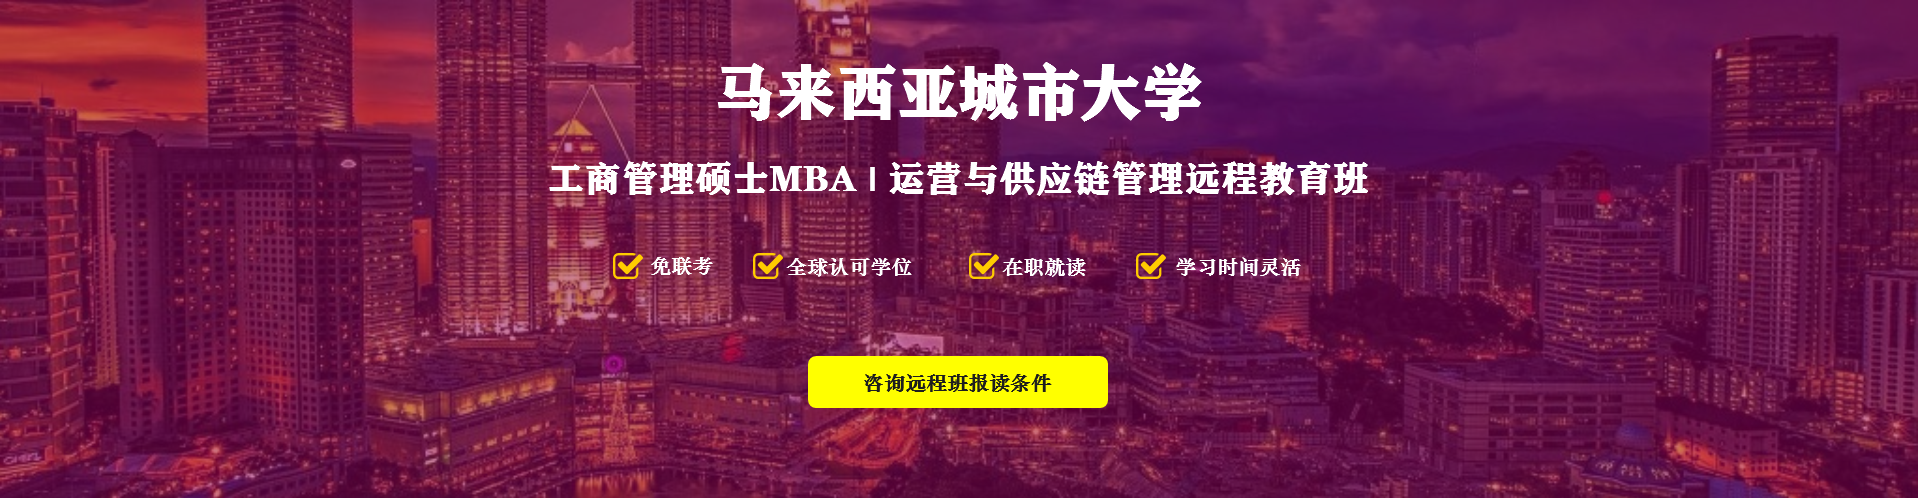 马来西亚城市大学MBA远程班招生开始啦